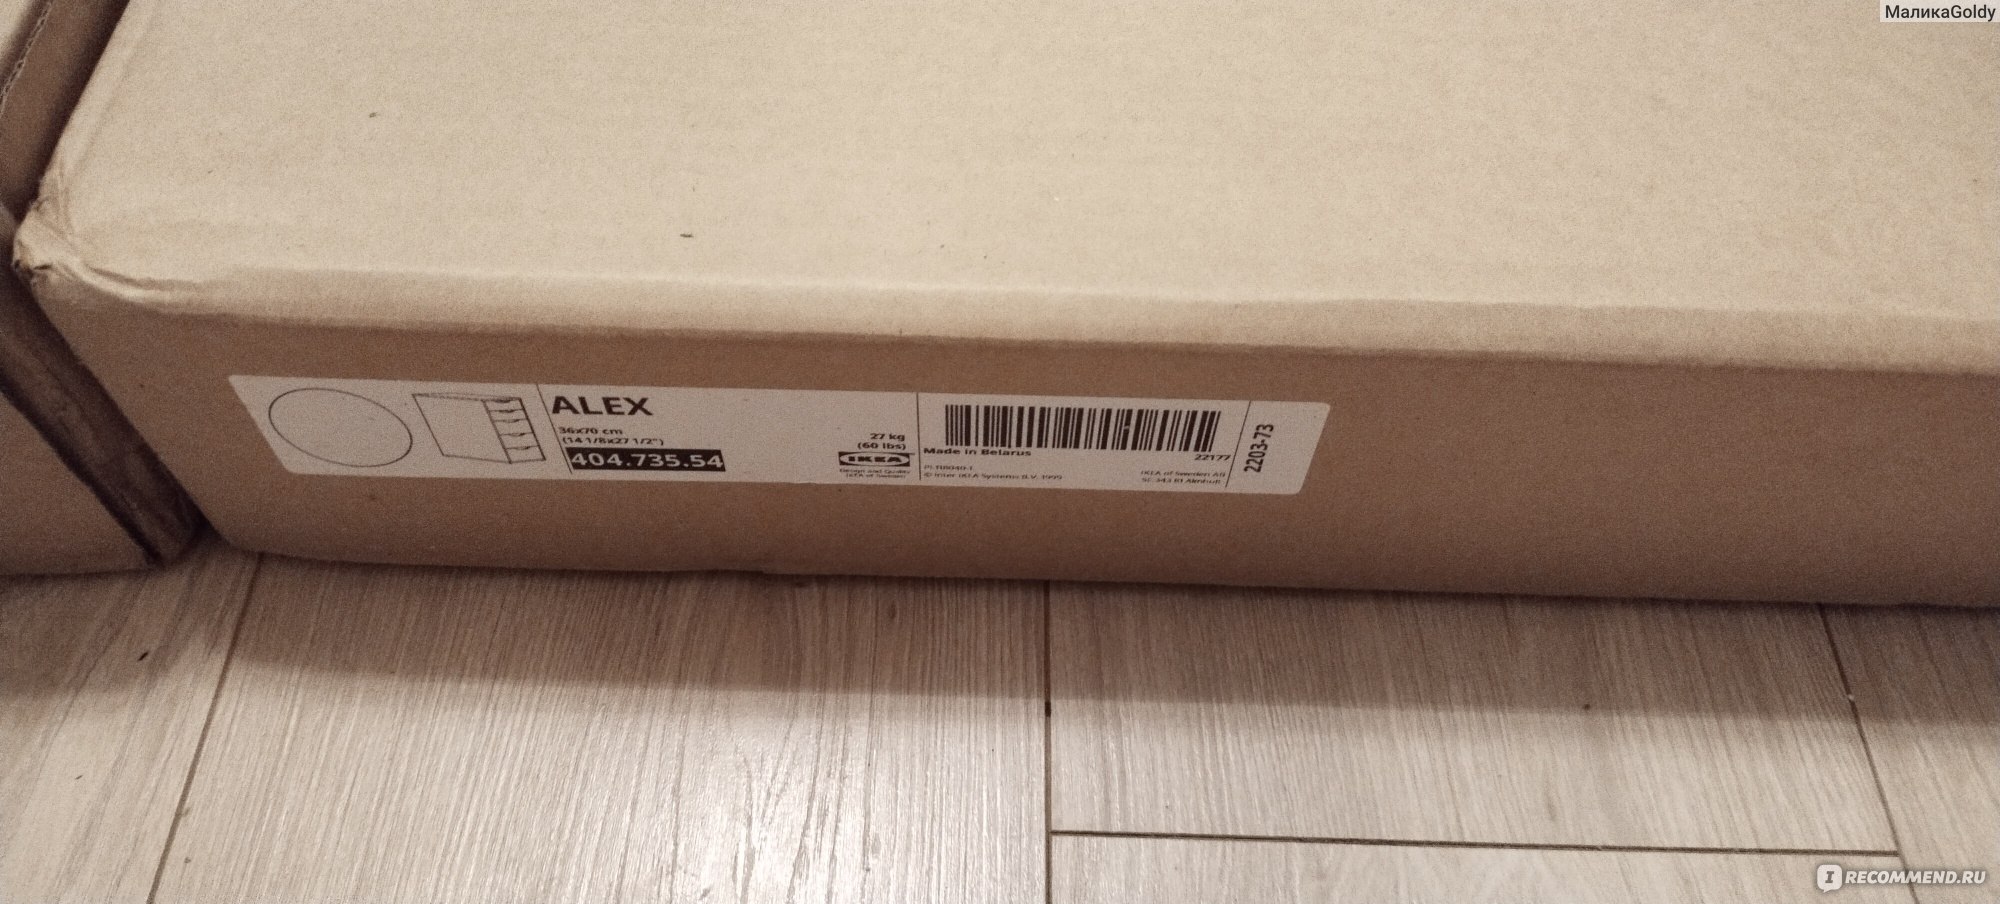 Alex алекс тумба с ящиками черно коричневый 36x70 см